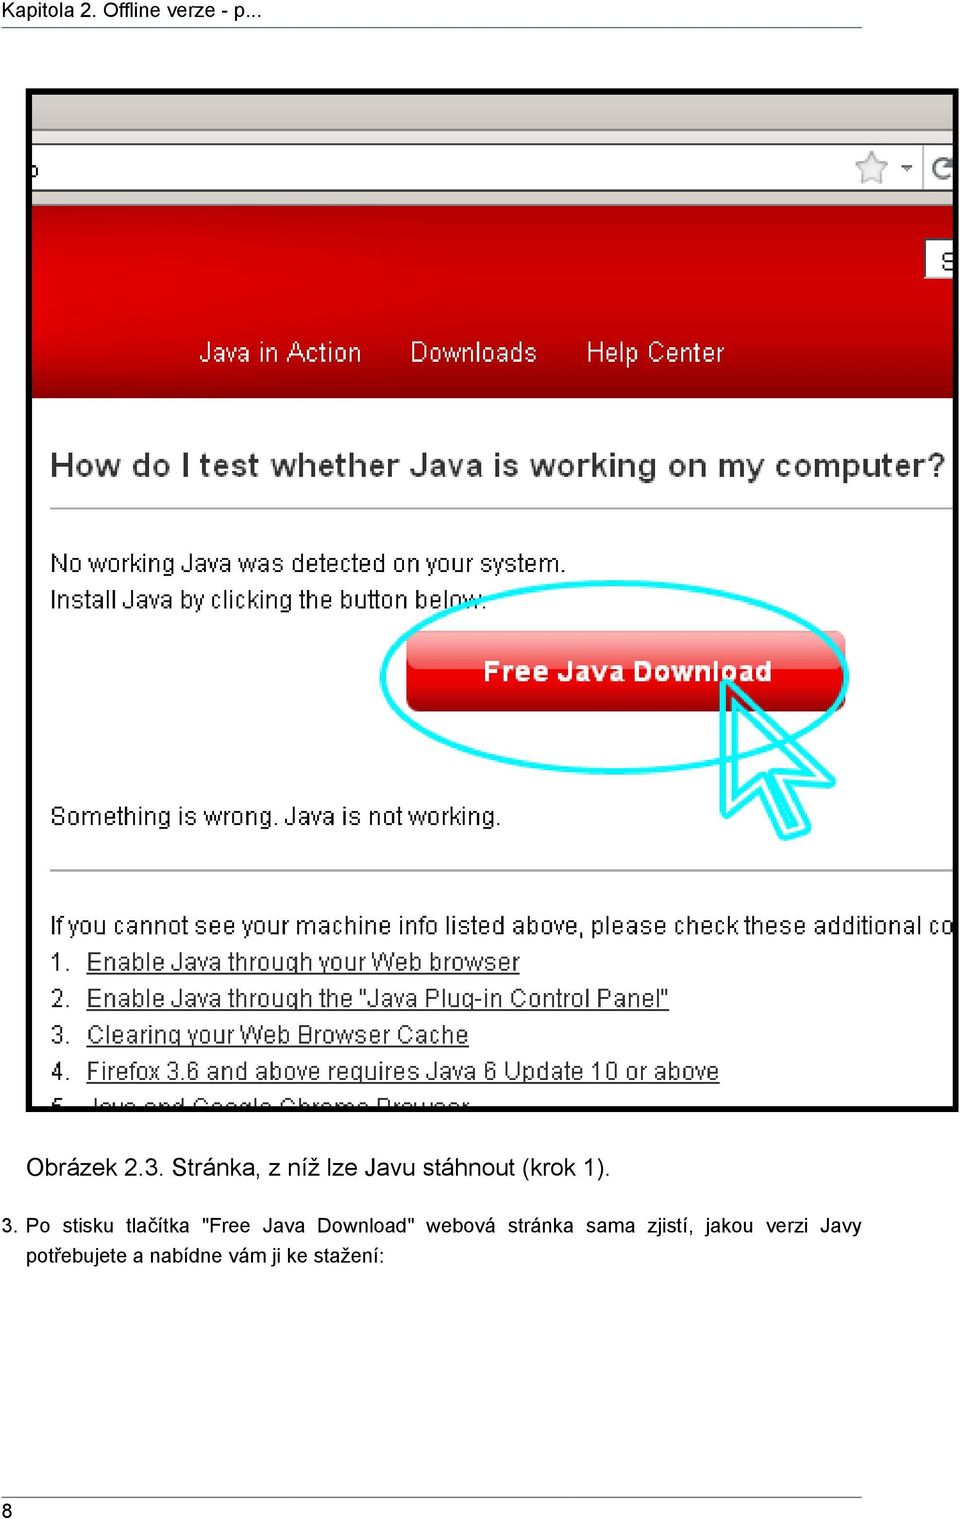 Po stisku tlačítka "Free Java Download" webová stránka